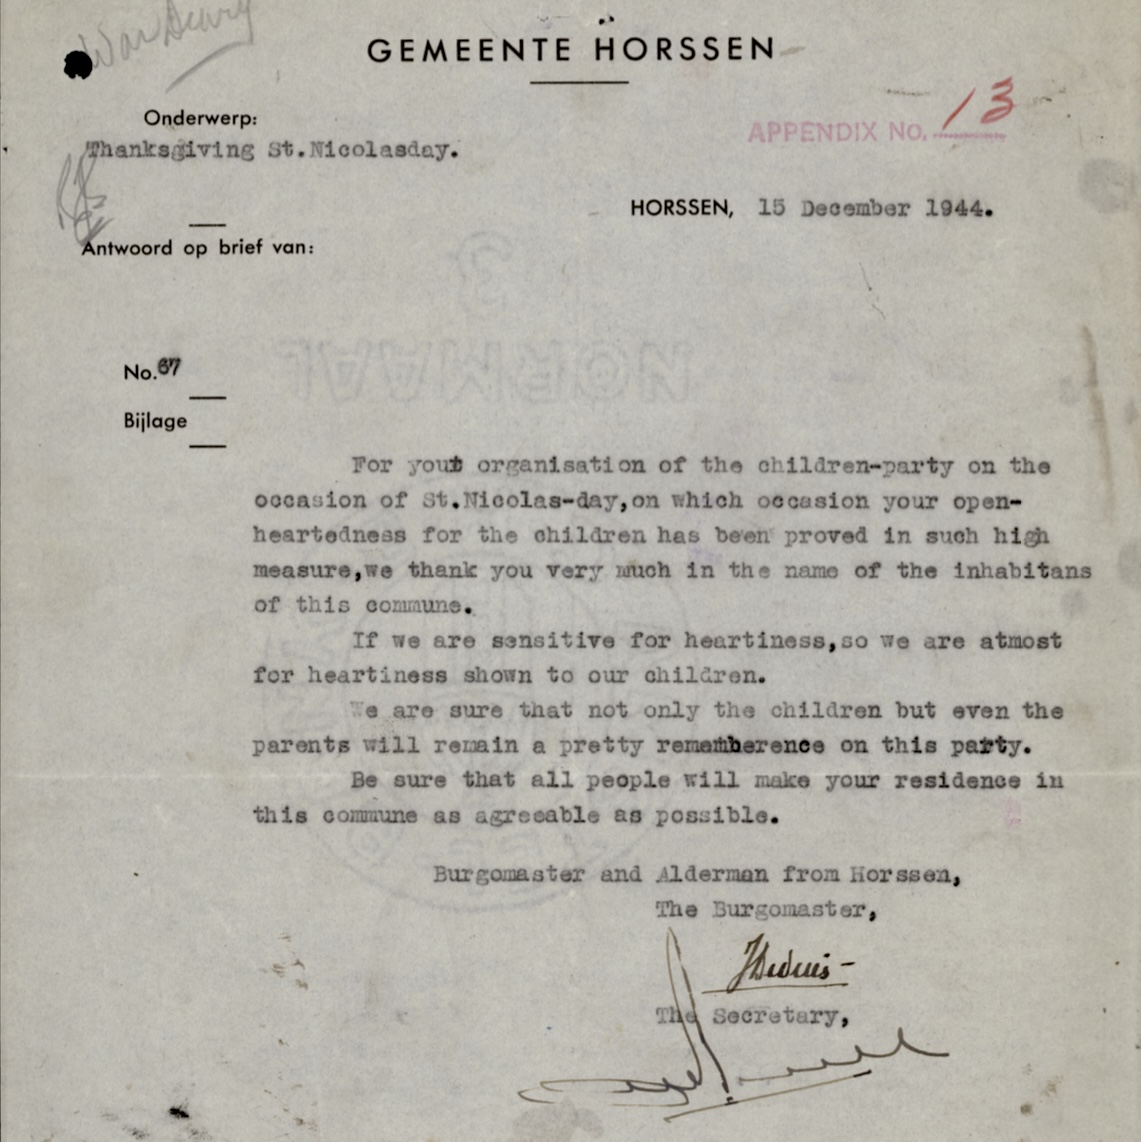 De brief van dank die door de burgemeester en wethouders is gestuurd naar de manschappen van het 8th Reconnaissance Regiment. © Library and Archives Canada.